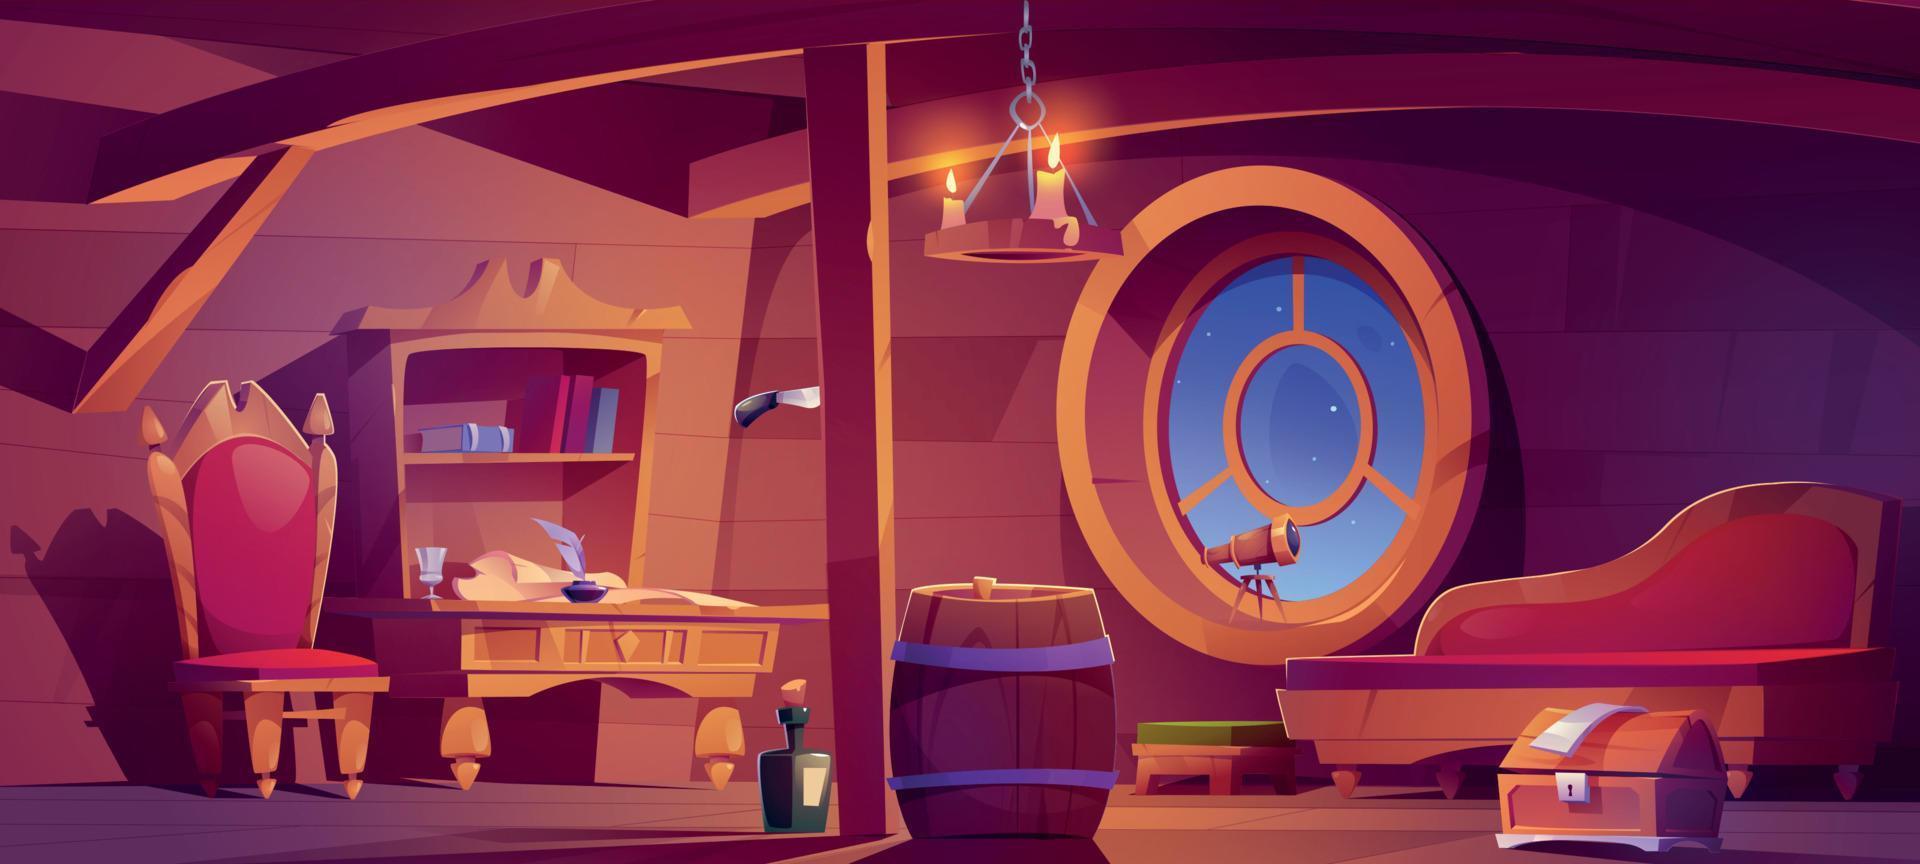 cabina de barco de capitán pirata, interior de habitación de madera vector